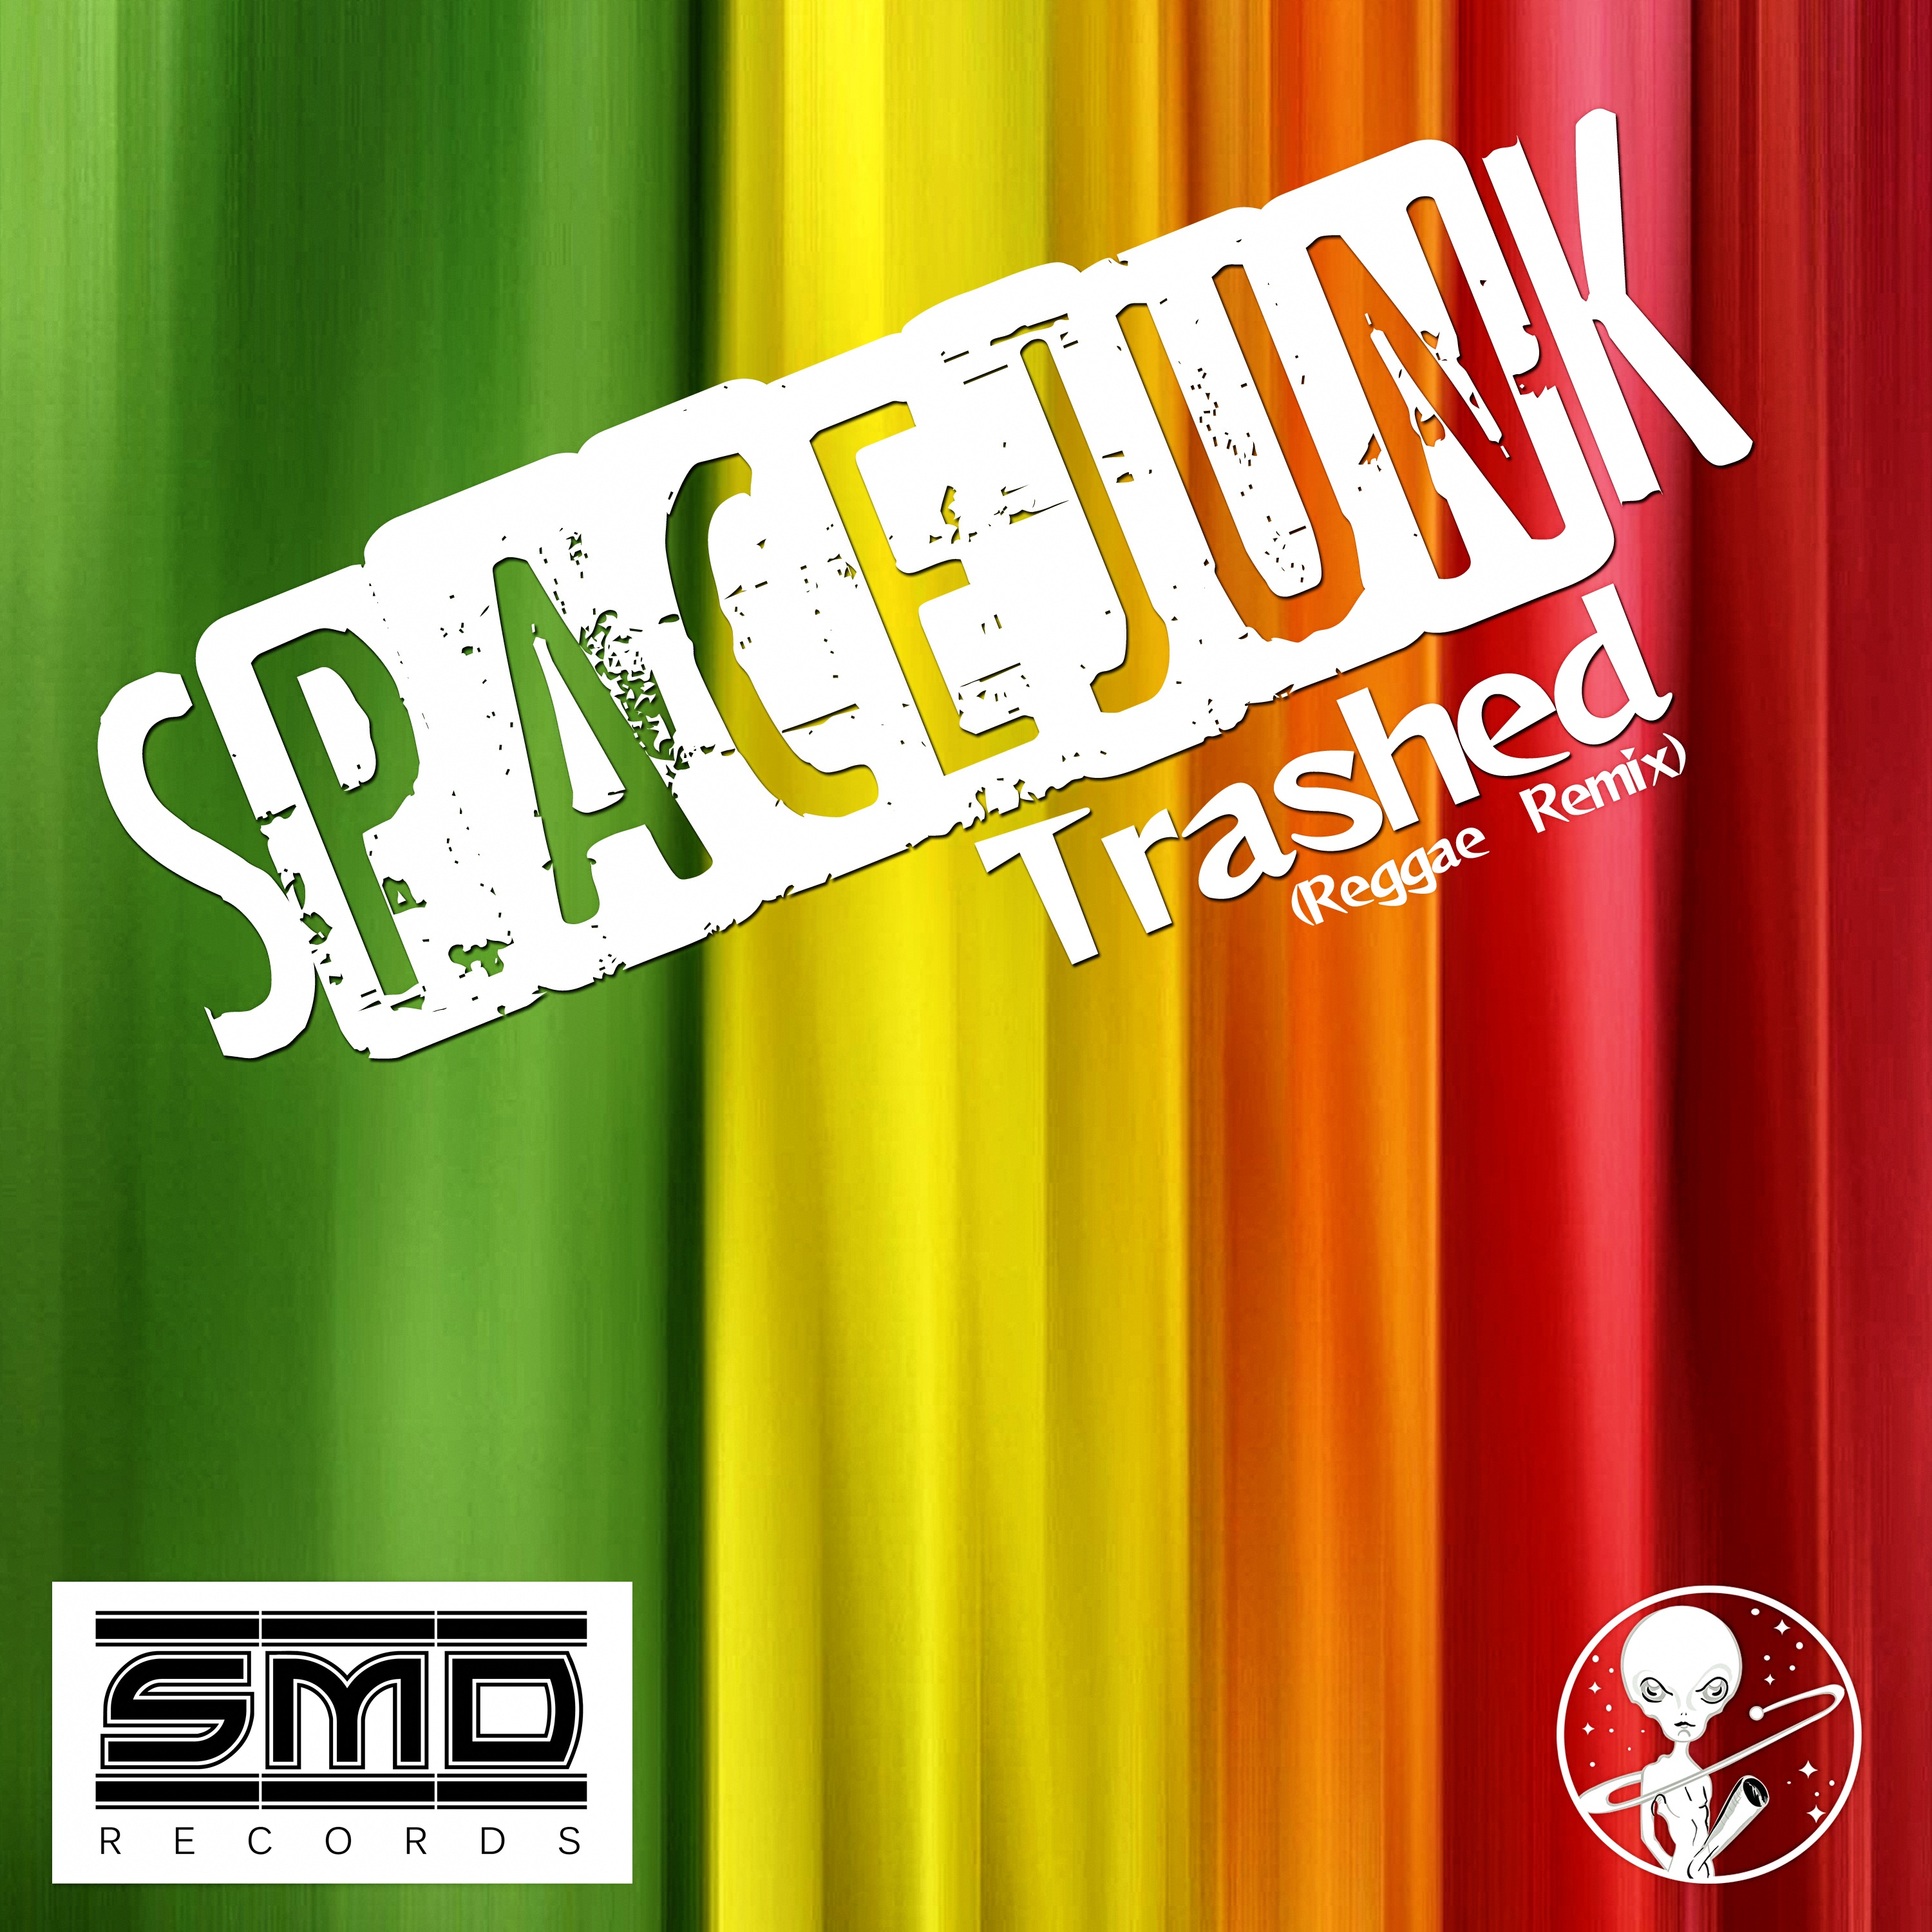 Spacejunk - Trashed (Reggae Remix)